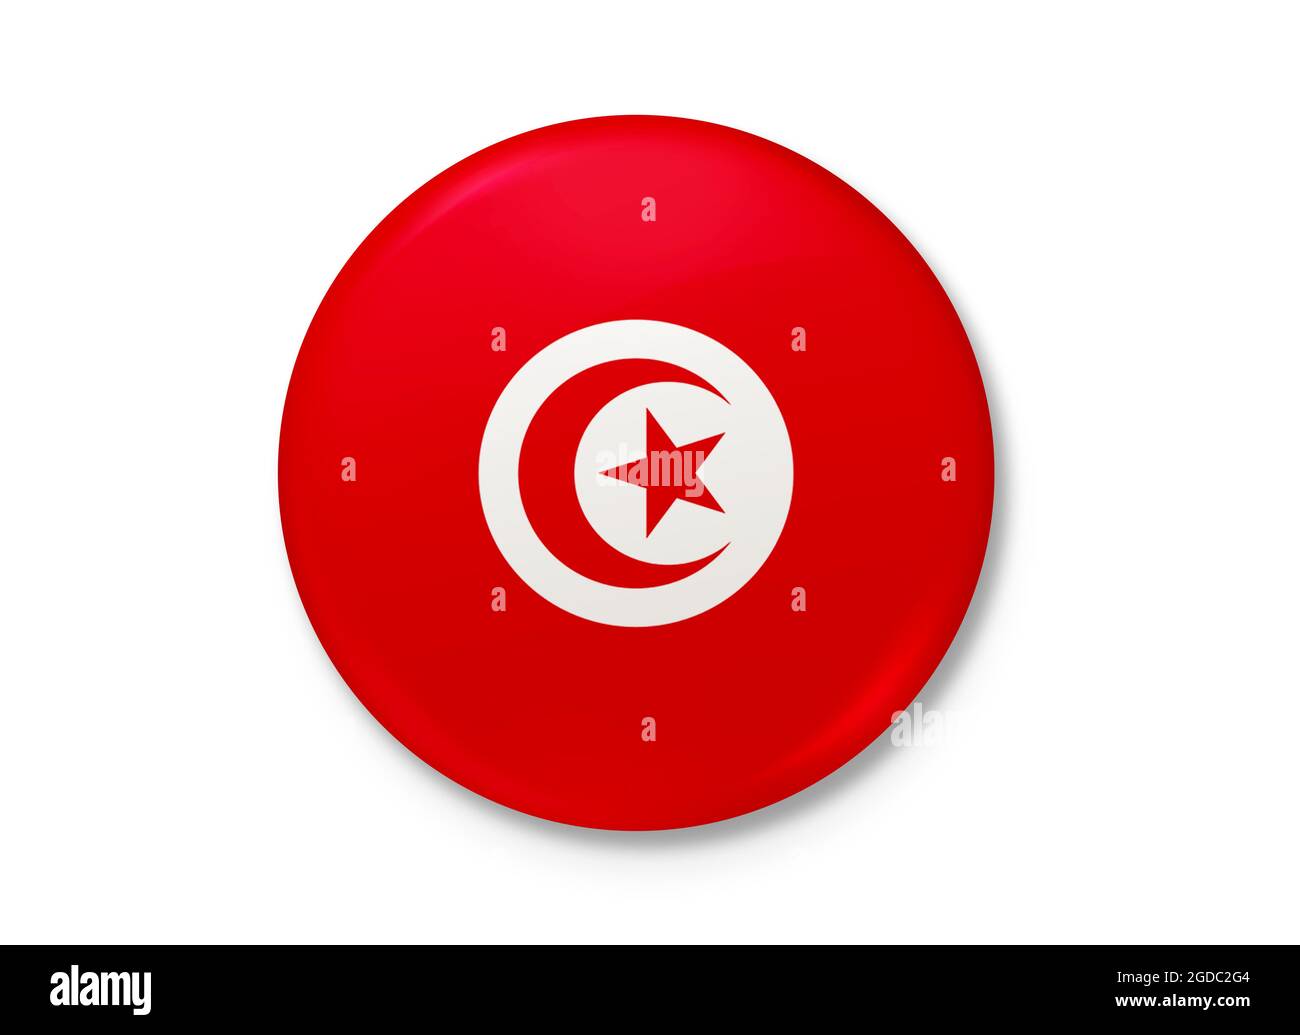 Flagge der Republik Tunesien weht im Wind. Hintergrundtextur. Tunis. 3d-Illustration. 3d-Rendering. Stockfoto